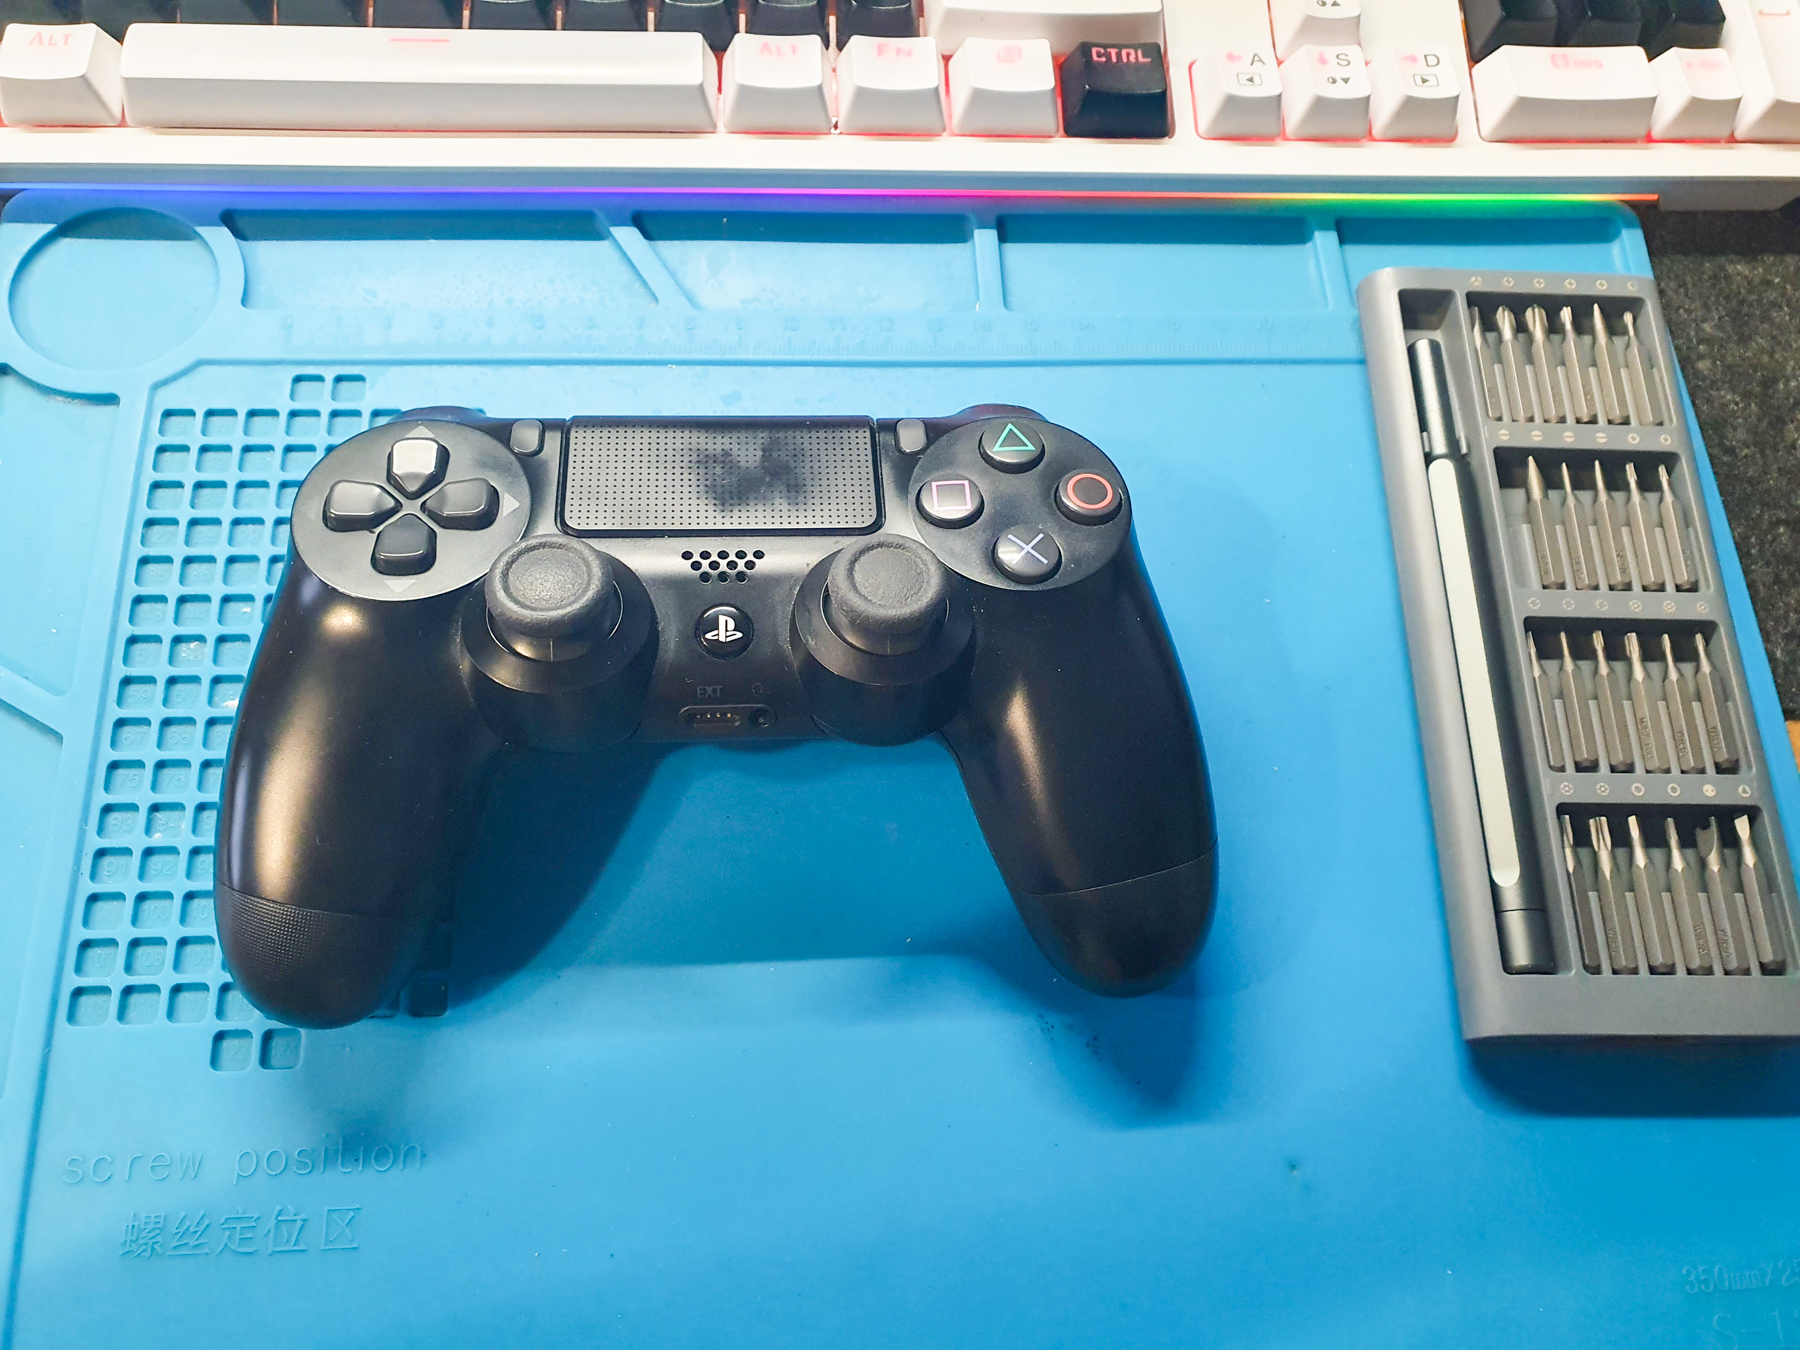 Ремонт игровых приставок XBOX и PlayStation в Тюмени - цены и вызов мастера